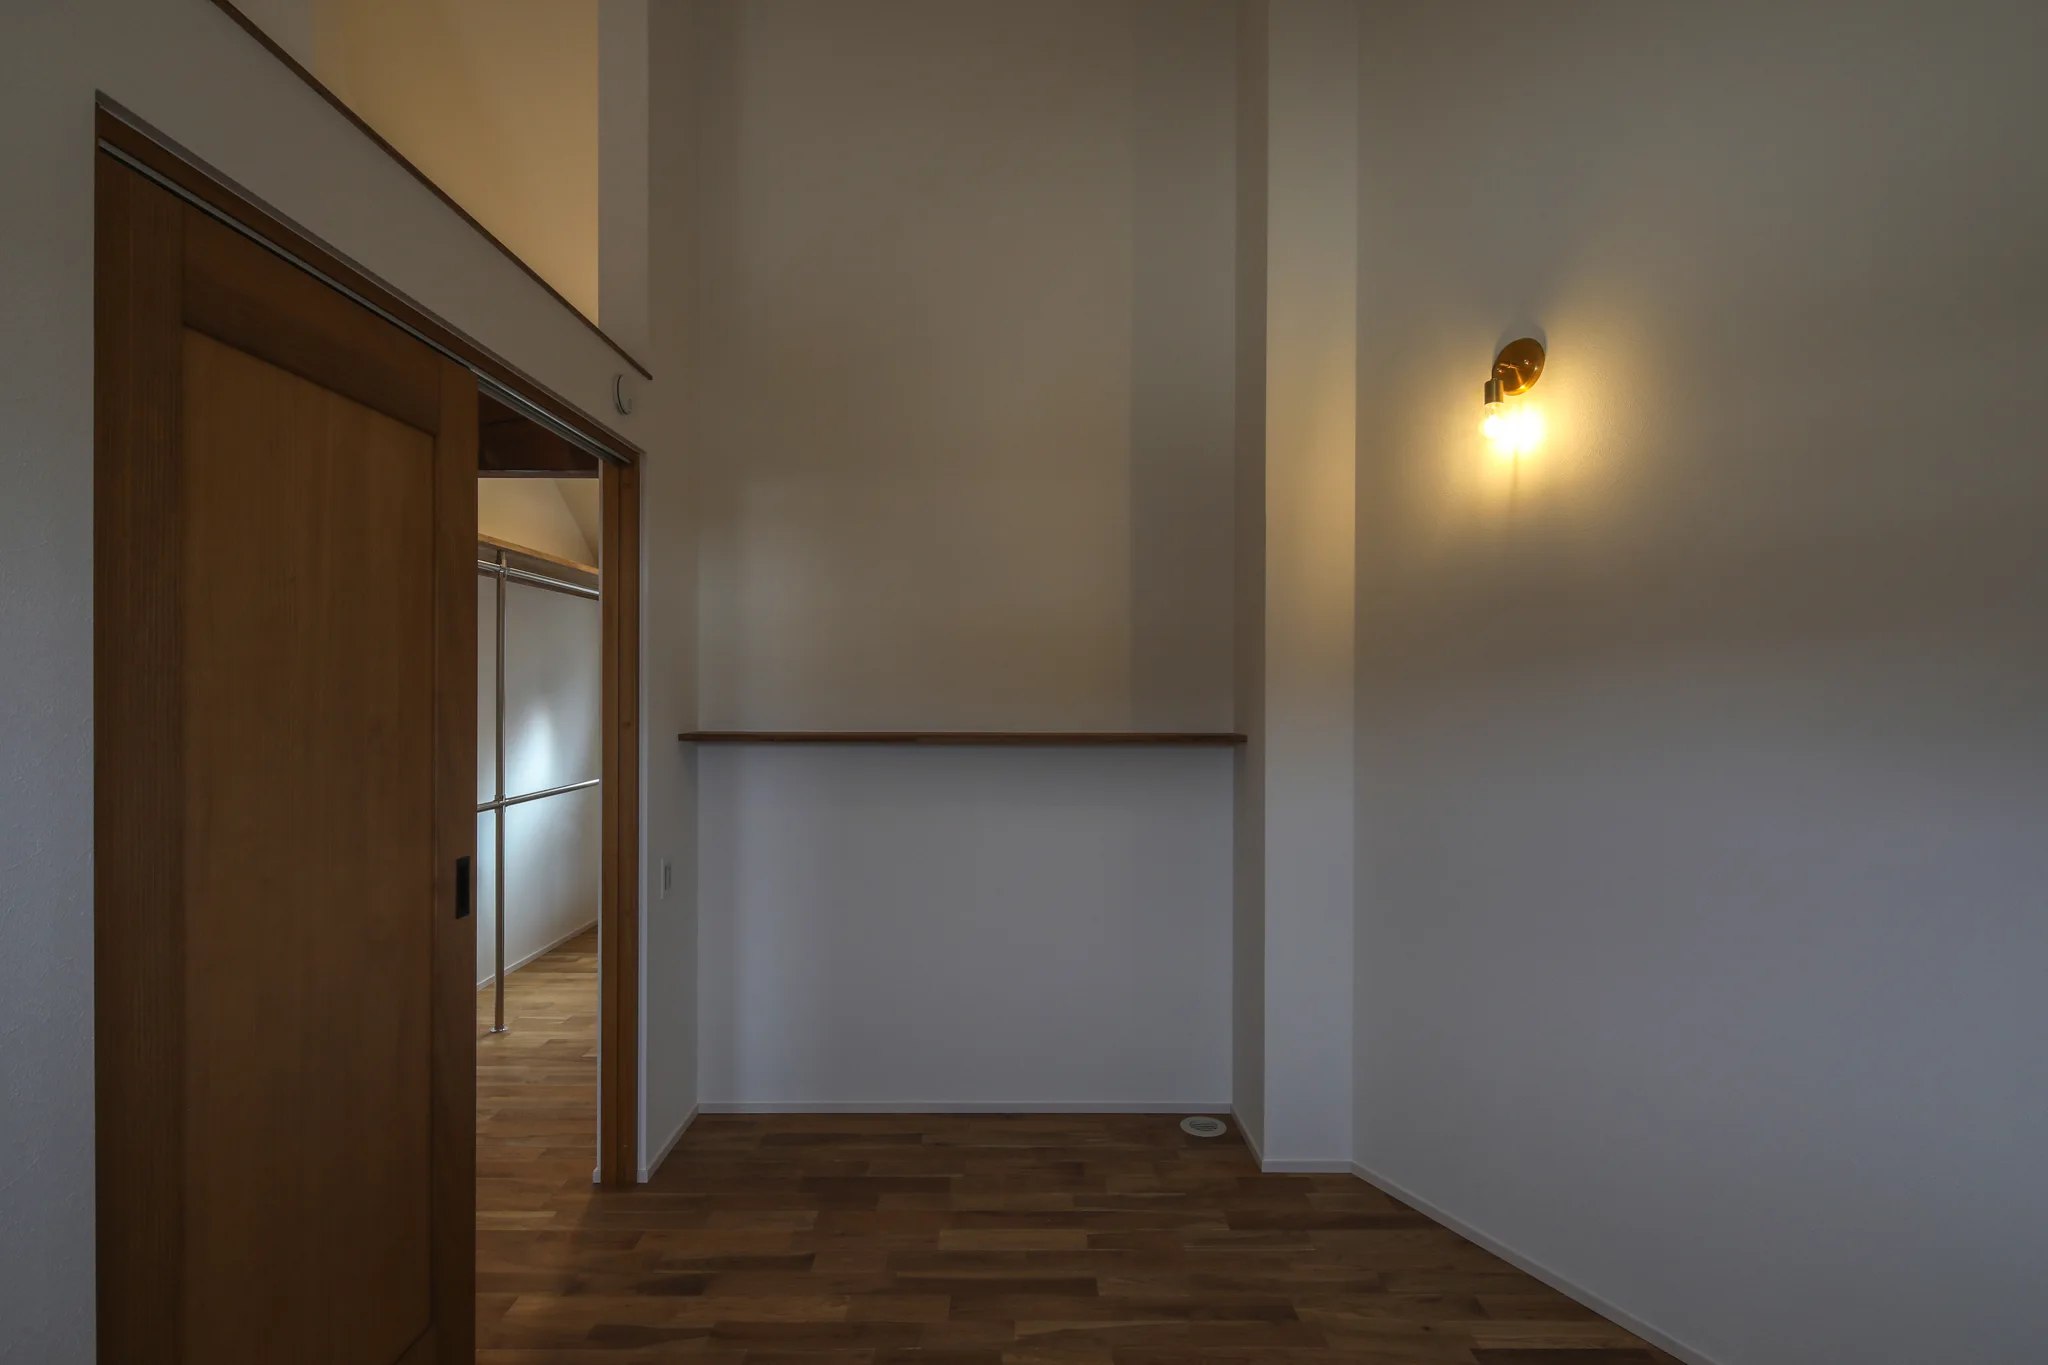 主寝室。床が台形をしている。斜め部分の壁には壁付けの照明がある。左手には入口の引き戸。茶色い木製。正面には飾り棚がある。床は無垢のオークのフローリング